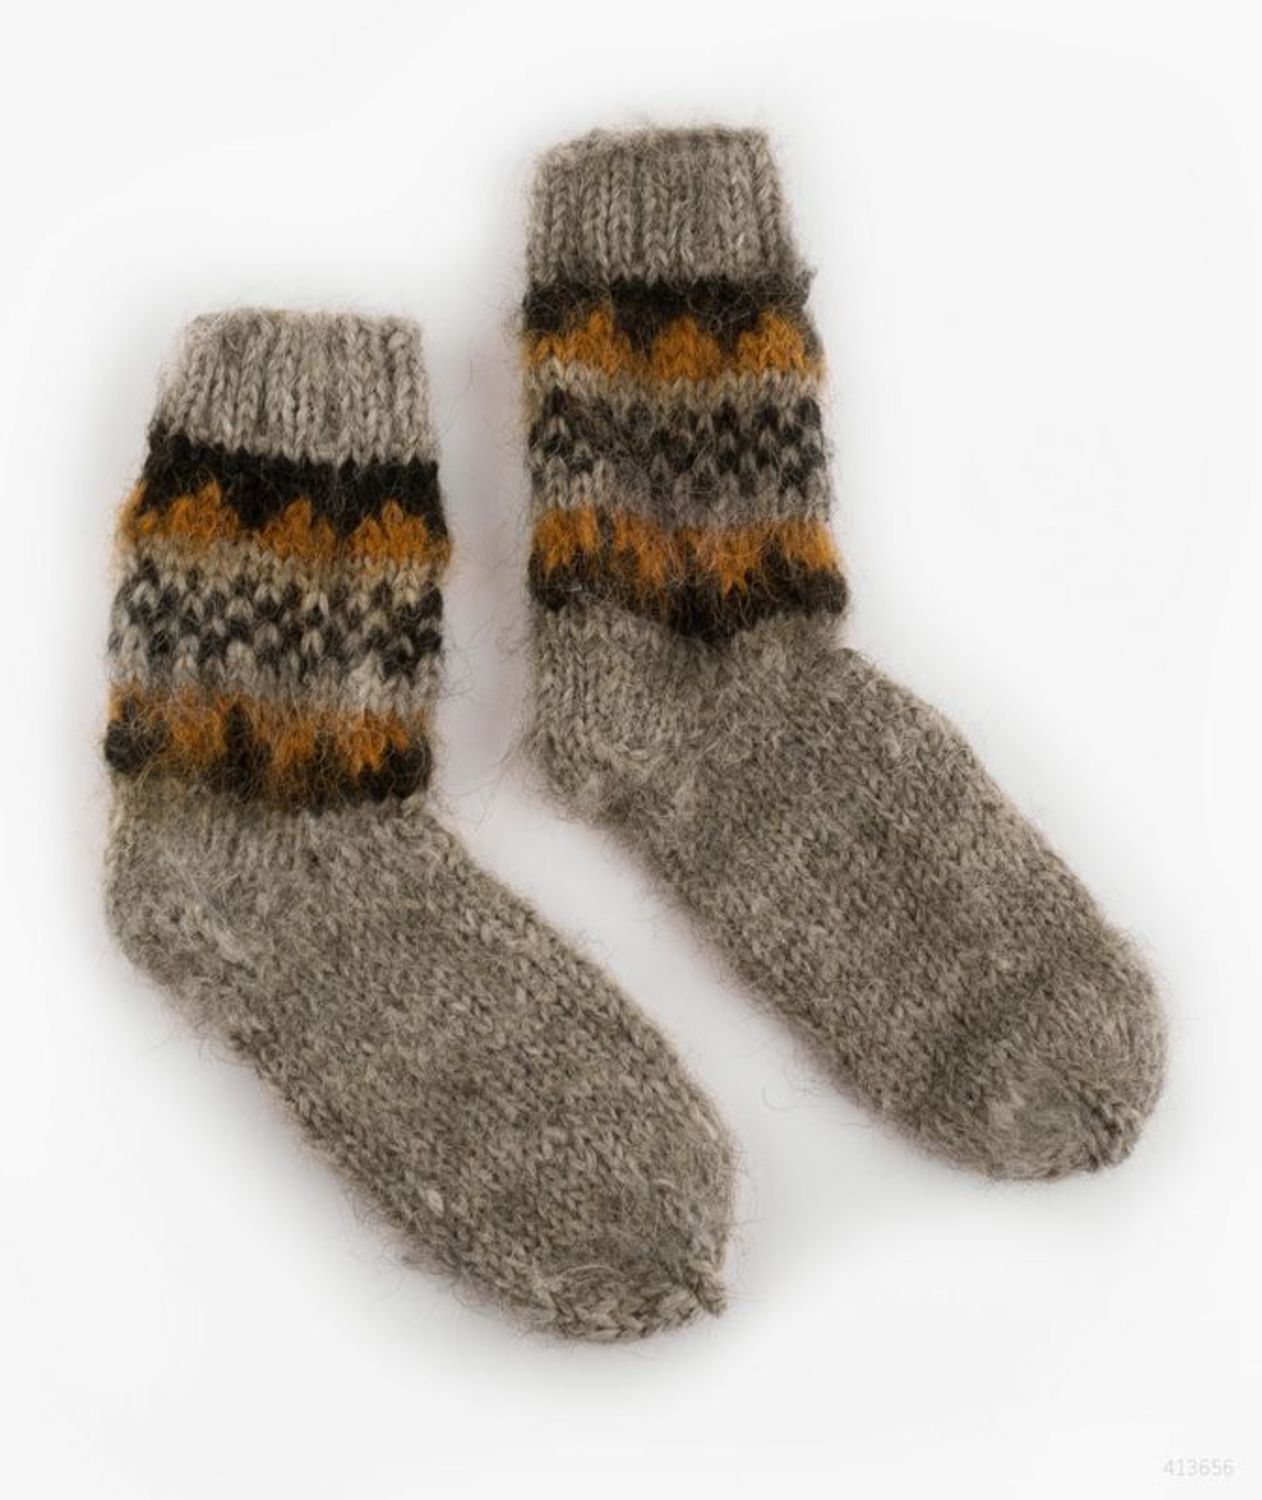 Les chaussettes de laine photo 2